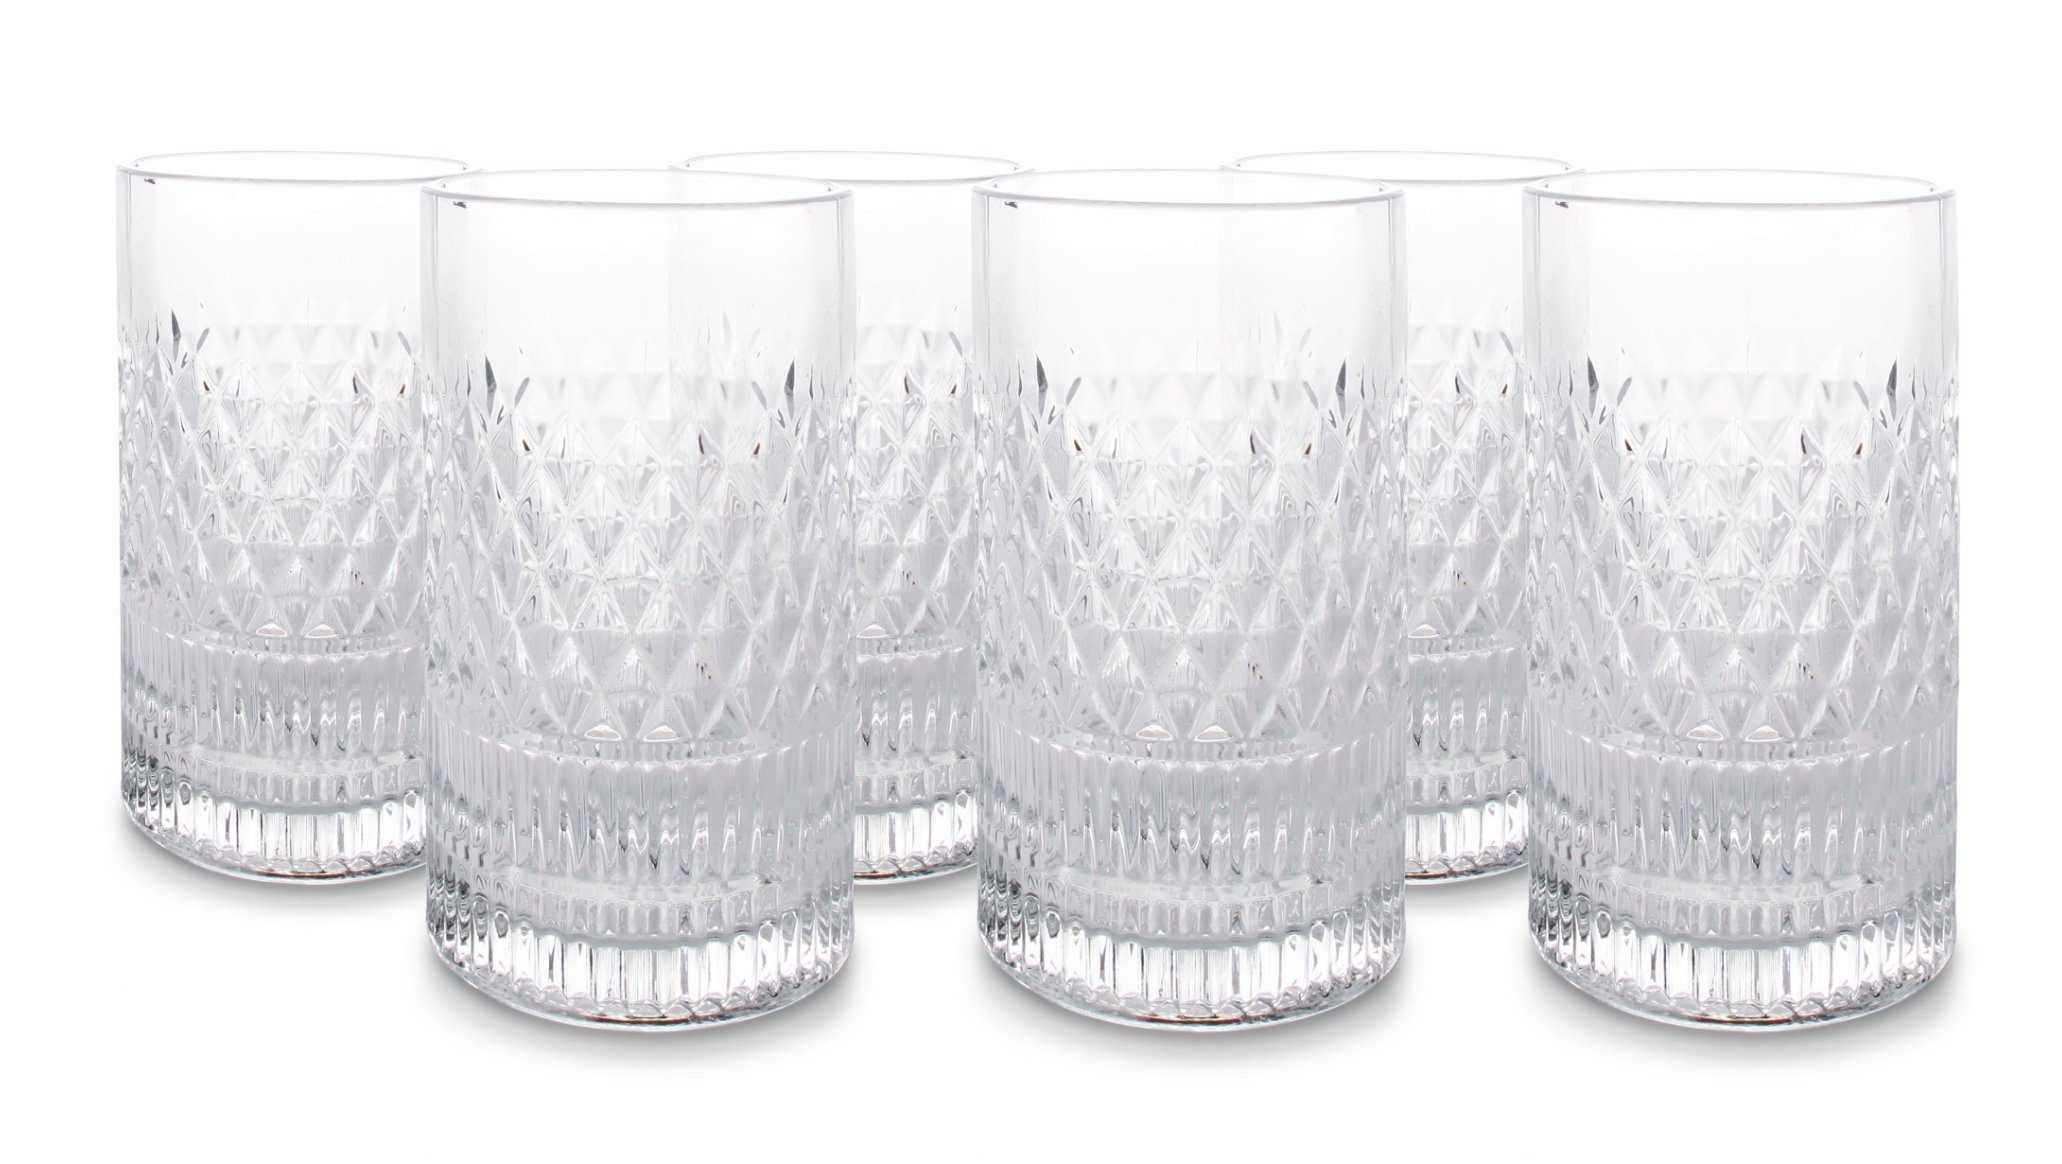 Asphald Glas 6er Set Vintage Longdrink Gläser Set 400ml Trinkglas Glas, Schönes Design